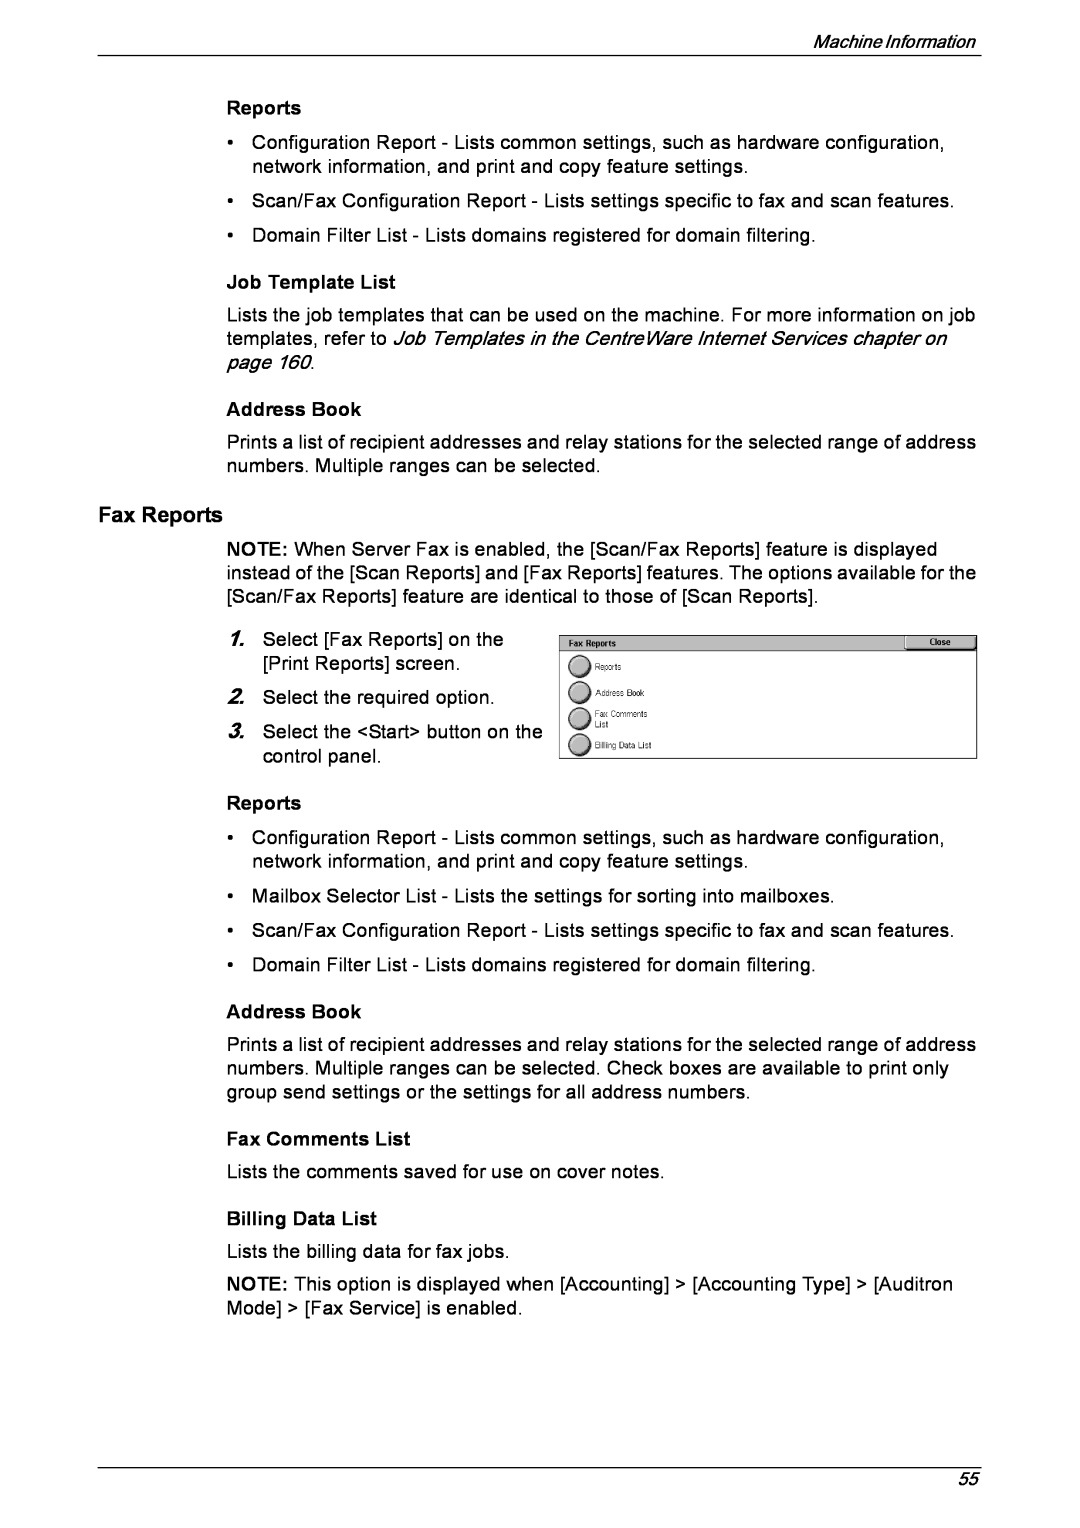 Xerox 5222 manual Reports, Job Template List, Address Book, Fax Comments List, Billing Data List 